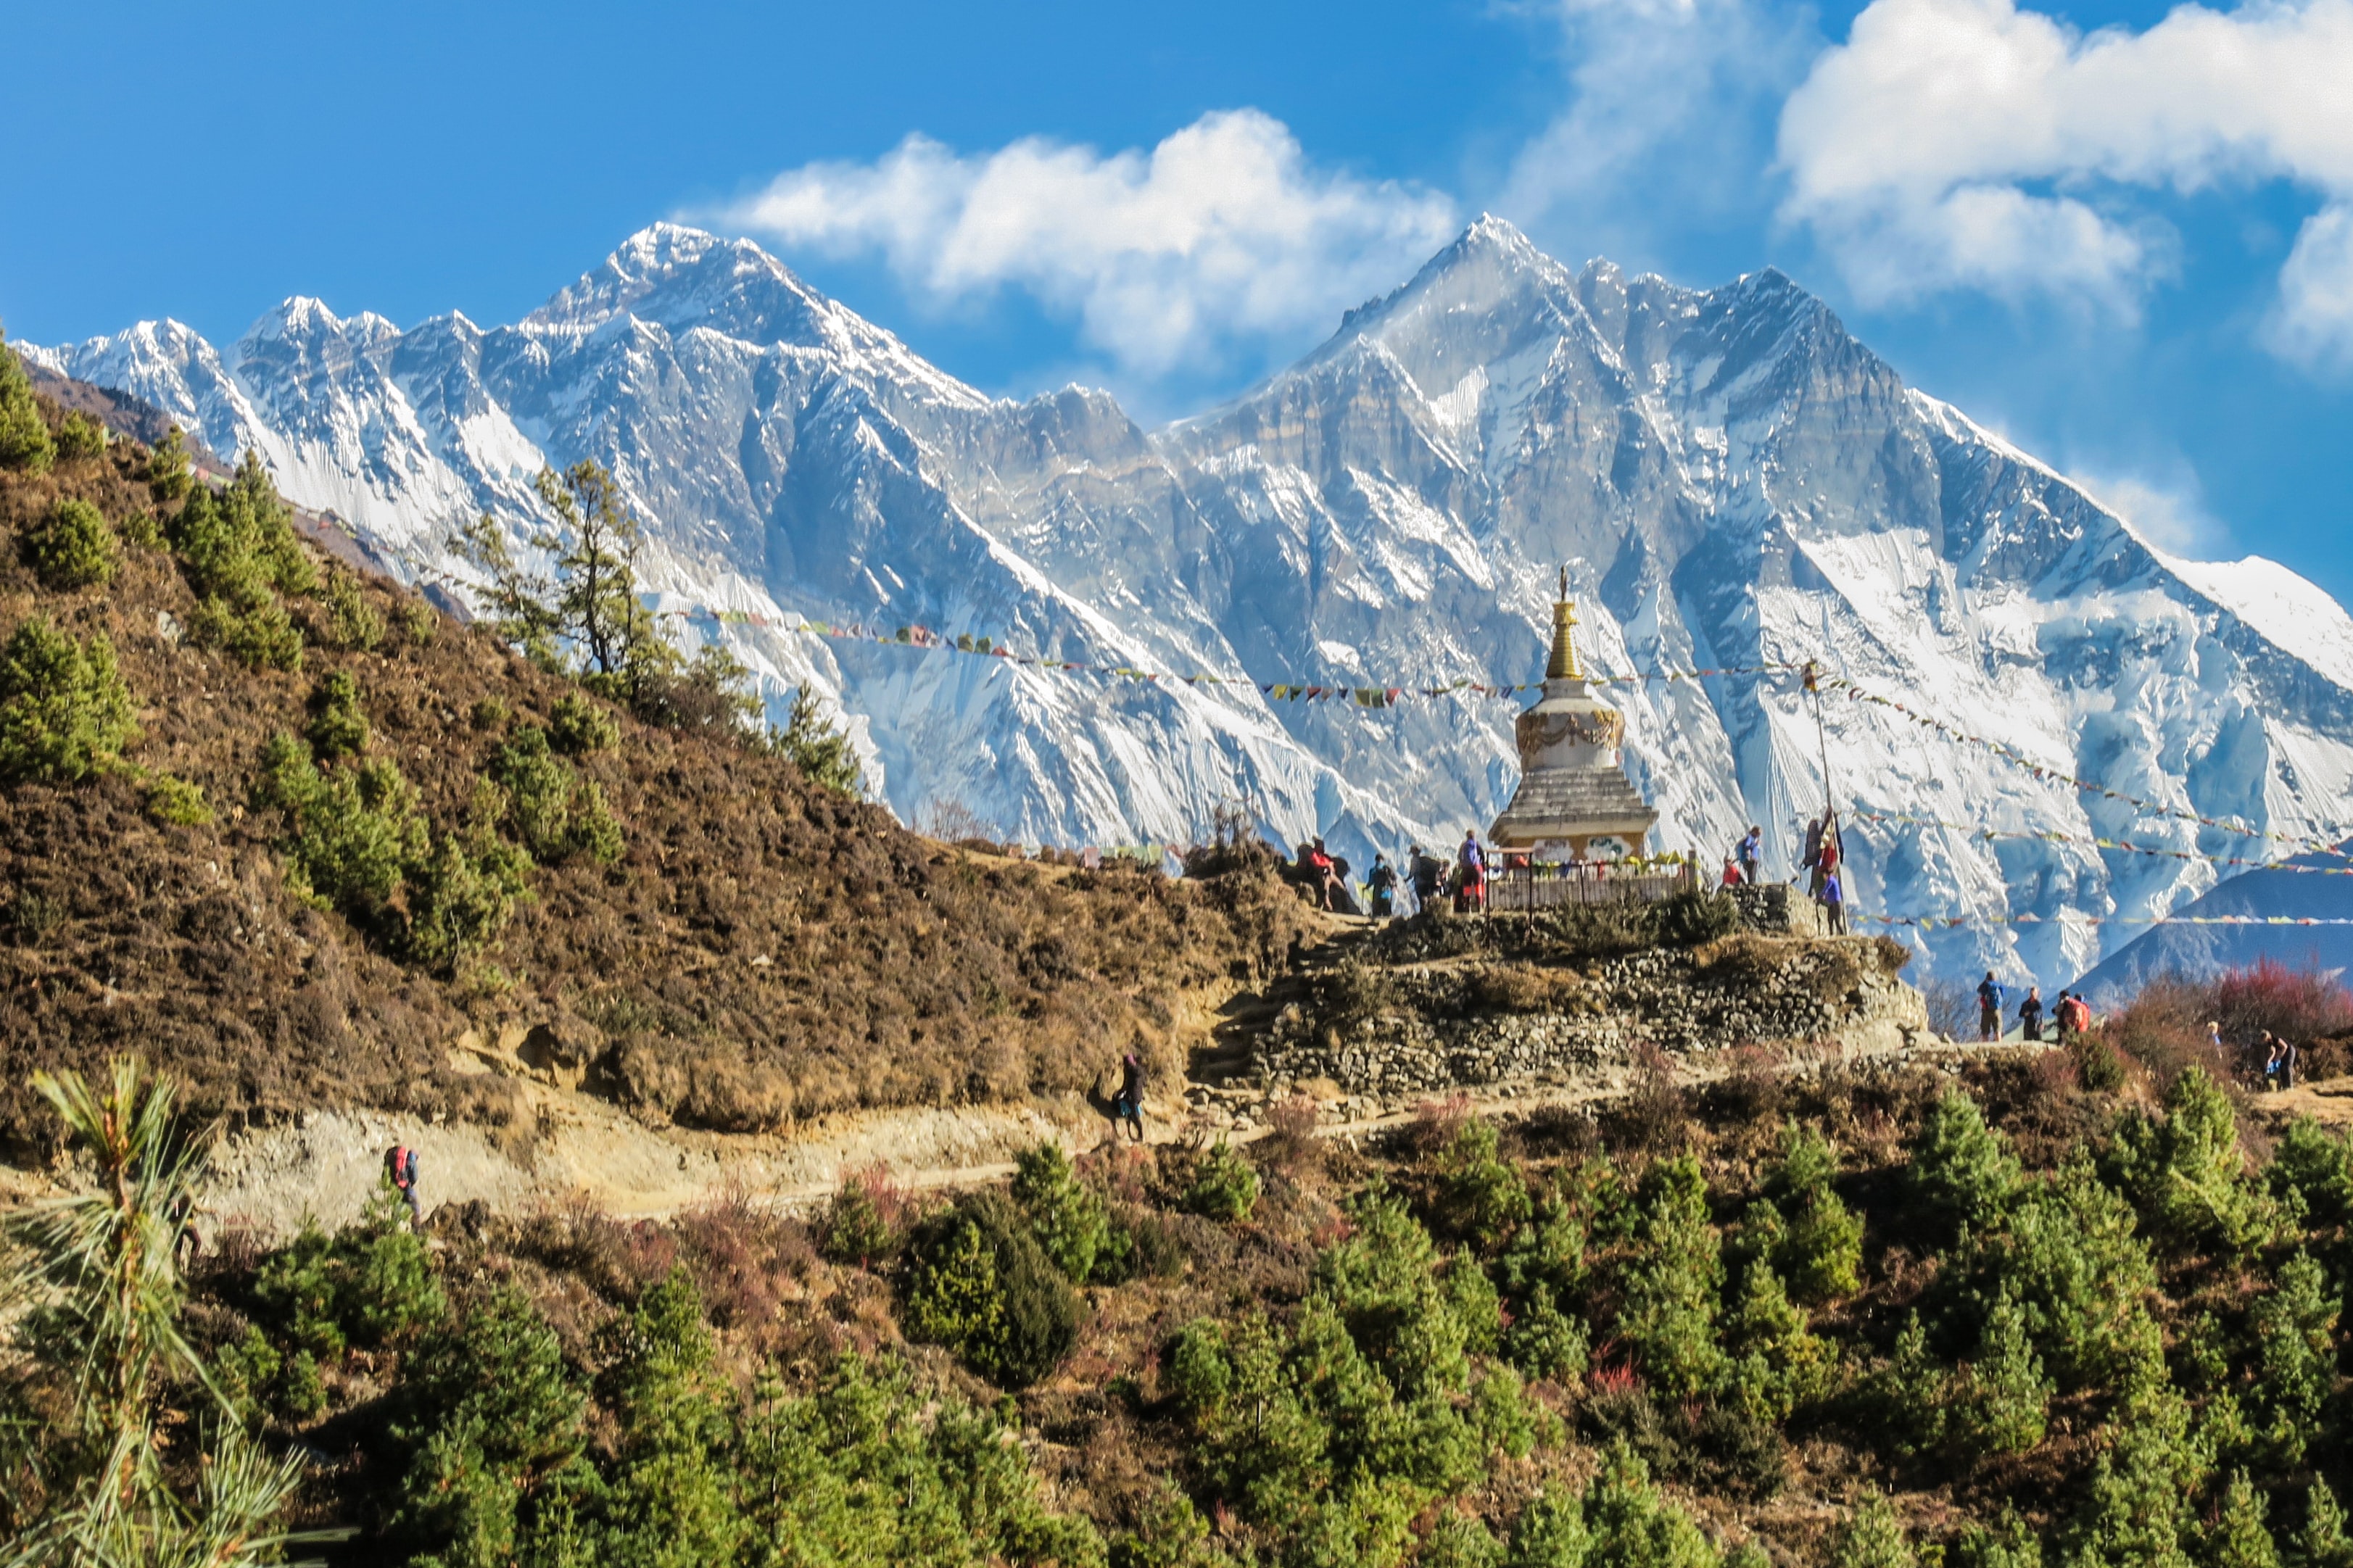 Jour4 : Jour 4 : Journée d'acclimatation - Randonnée jusqu'à l'Everest View Hotel (3 962m-12995ft) Distance de marche - 3 à 4 km, Durée : 3 à 4 heures